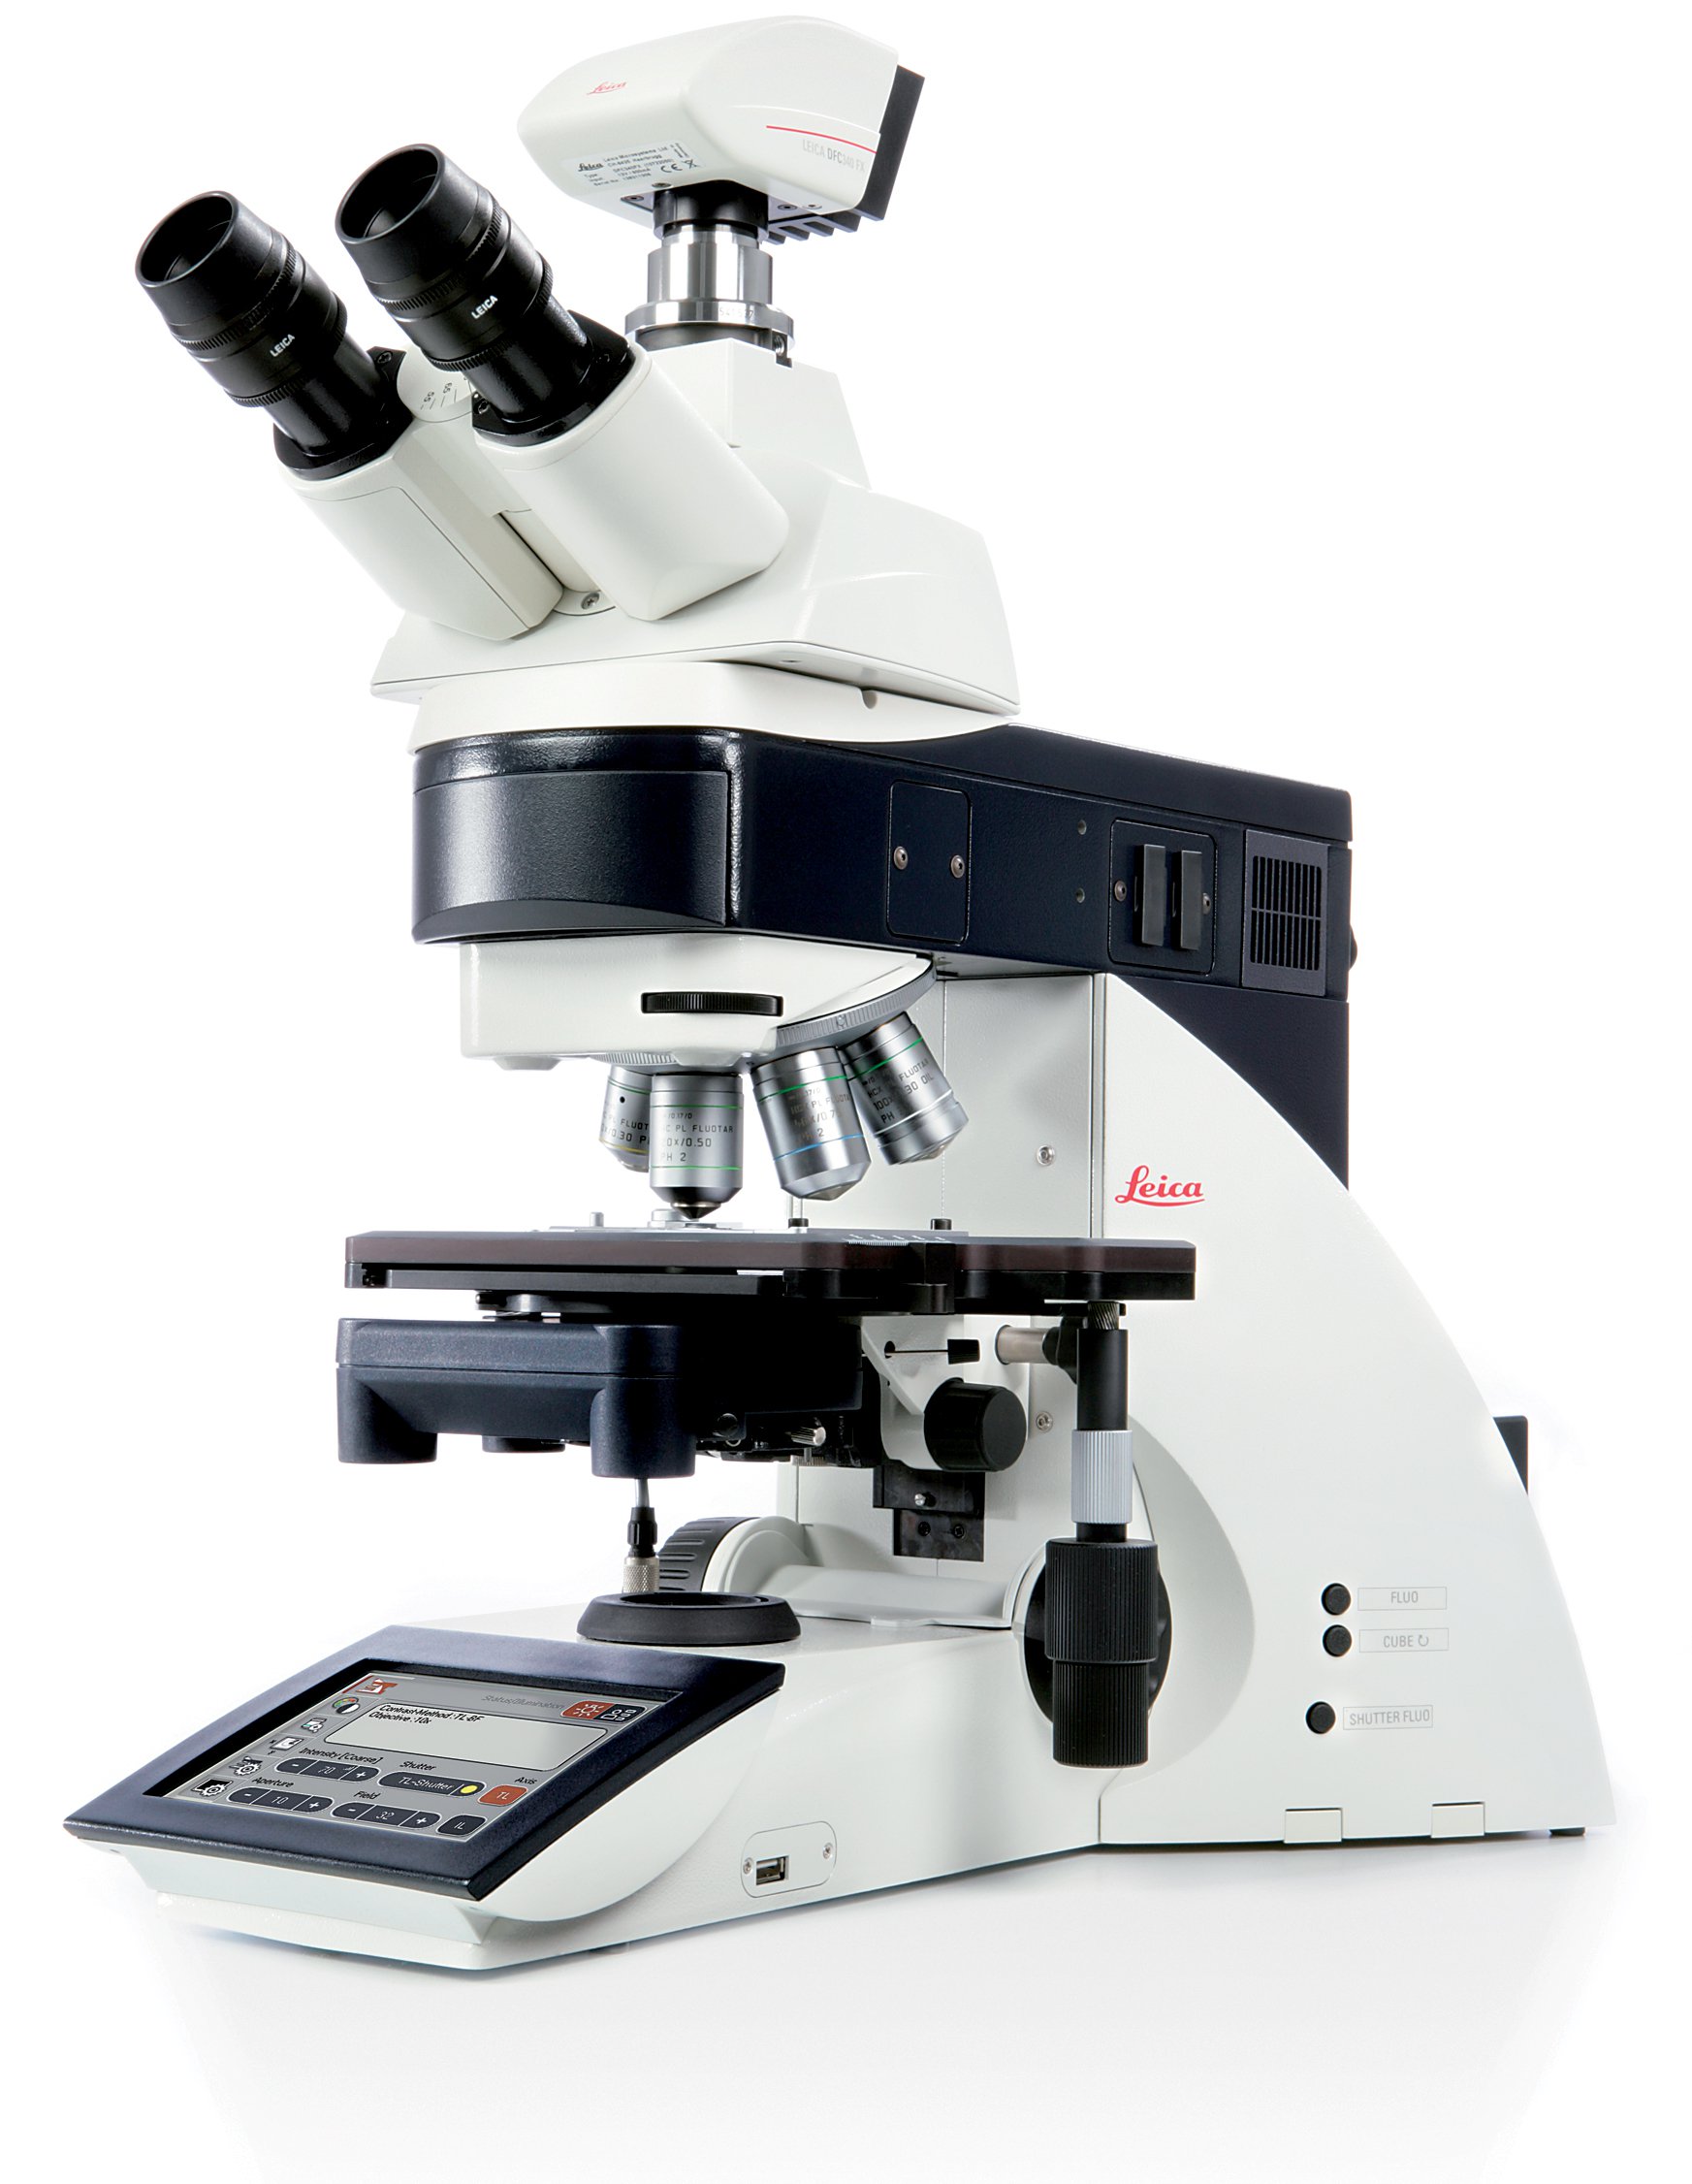 L'automazione intelligente rende il microscopio DM5500 B adatto a specifiche applicazioni mediante l'utilizzo dia un certo numero di sistemi di gestione elettronici